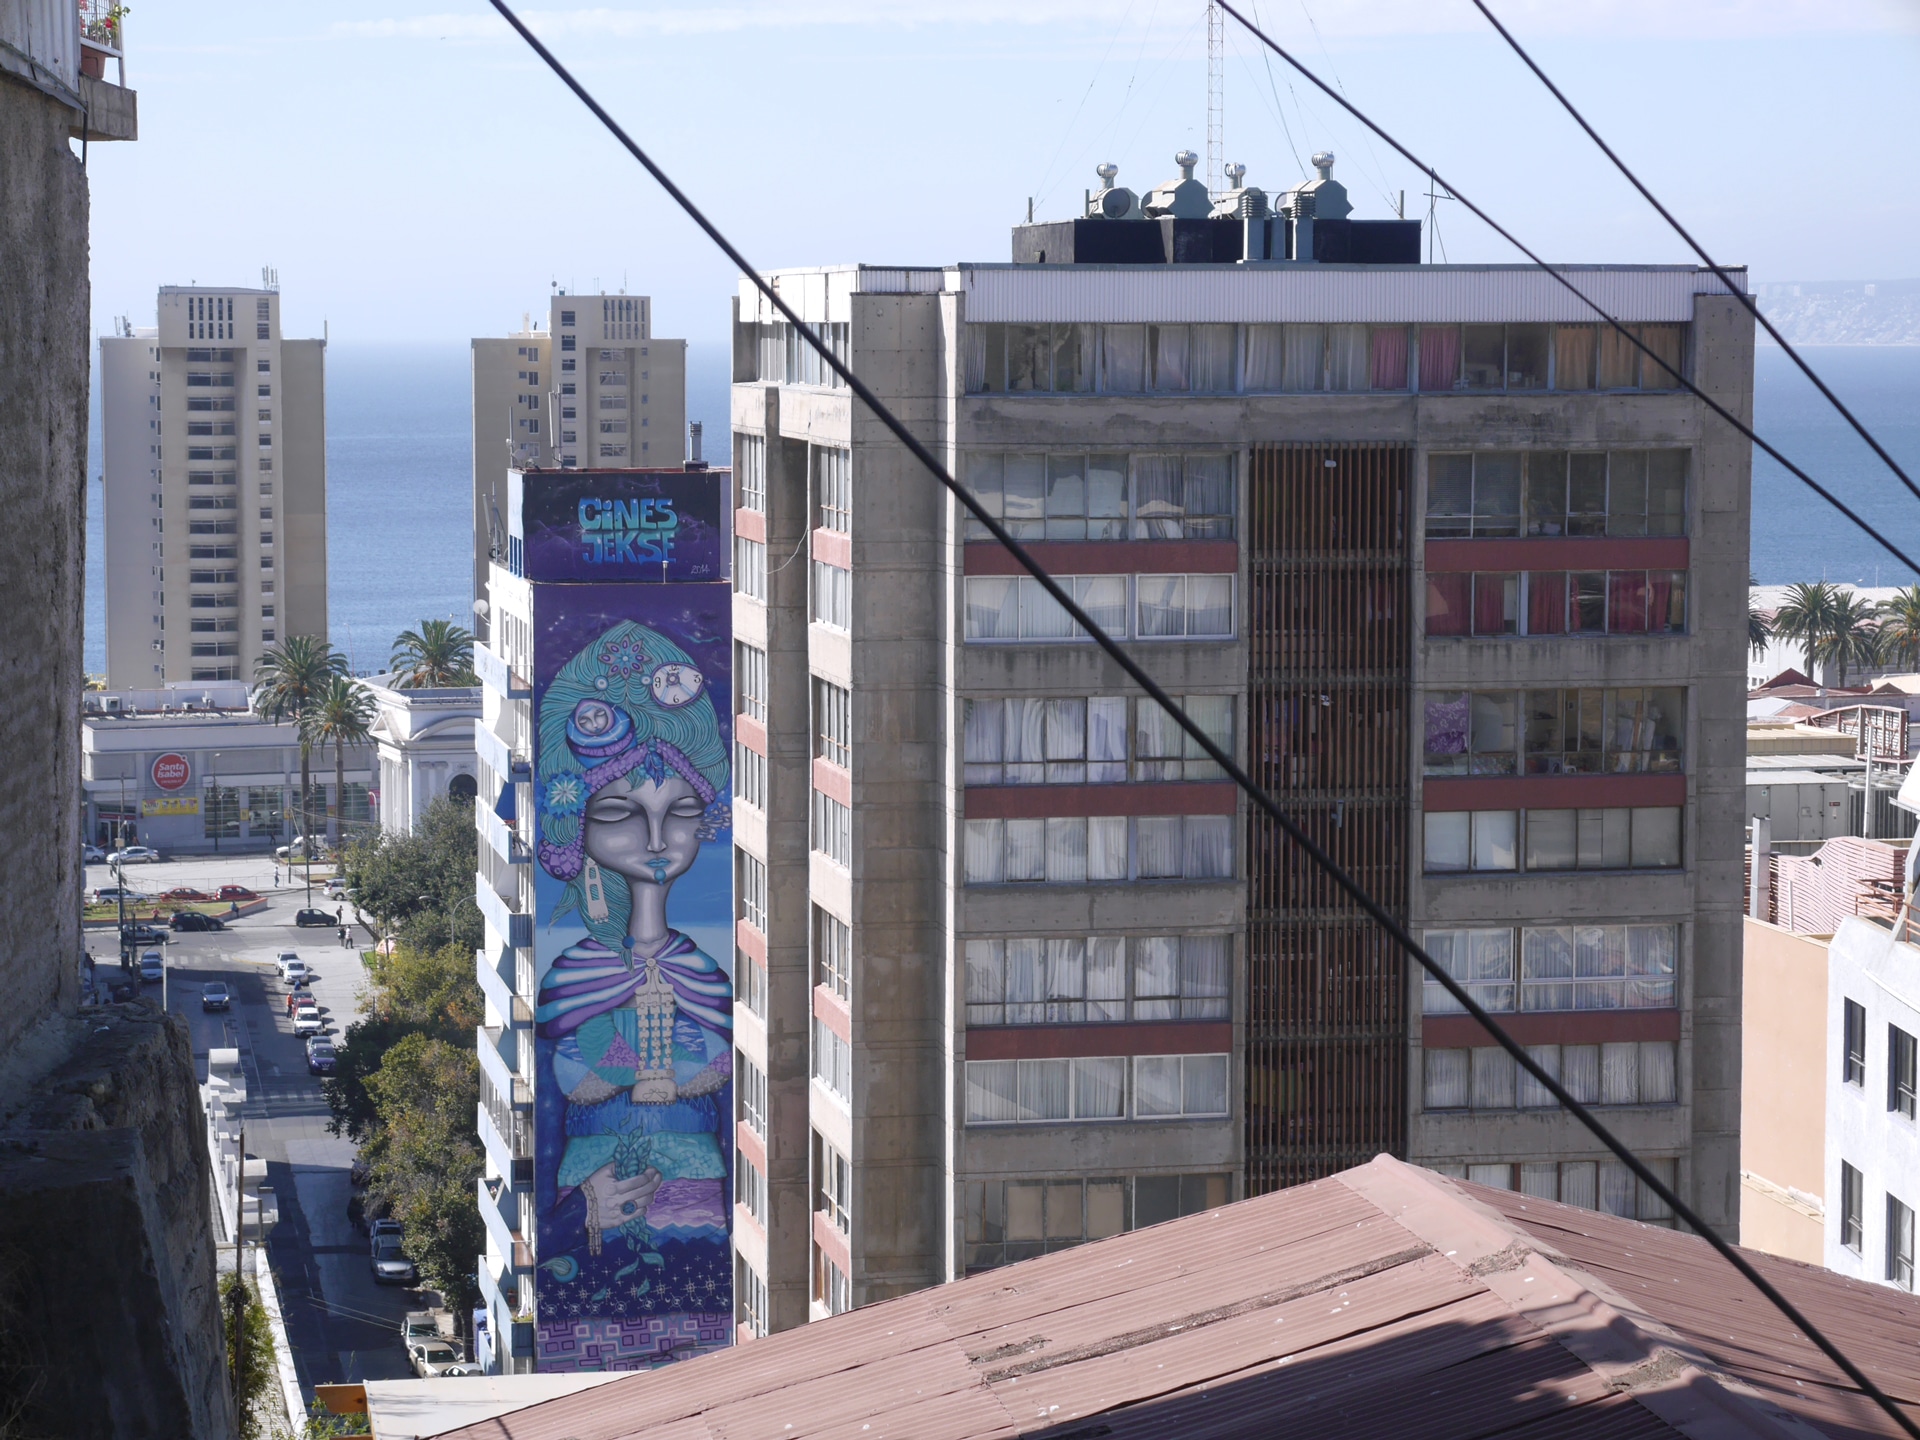 Fresque de Un Kolor Distinto sur un immeuble, à Valparaiso, au Chili